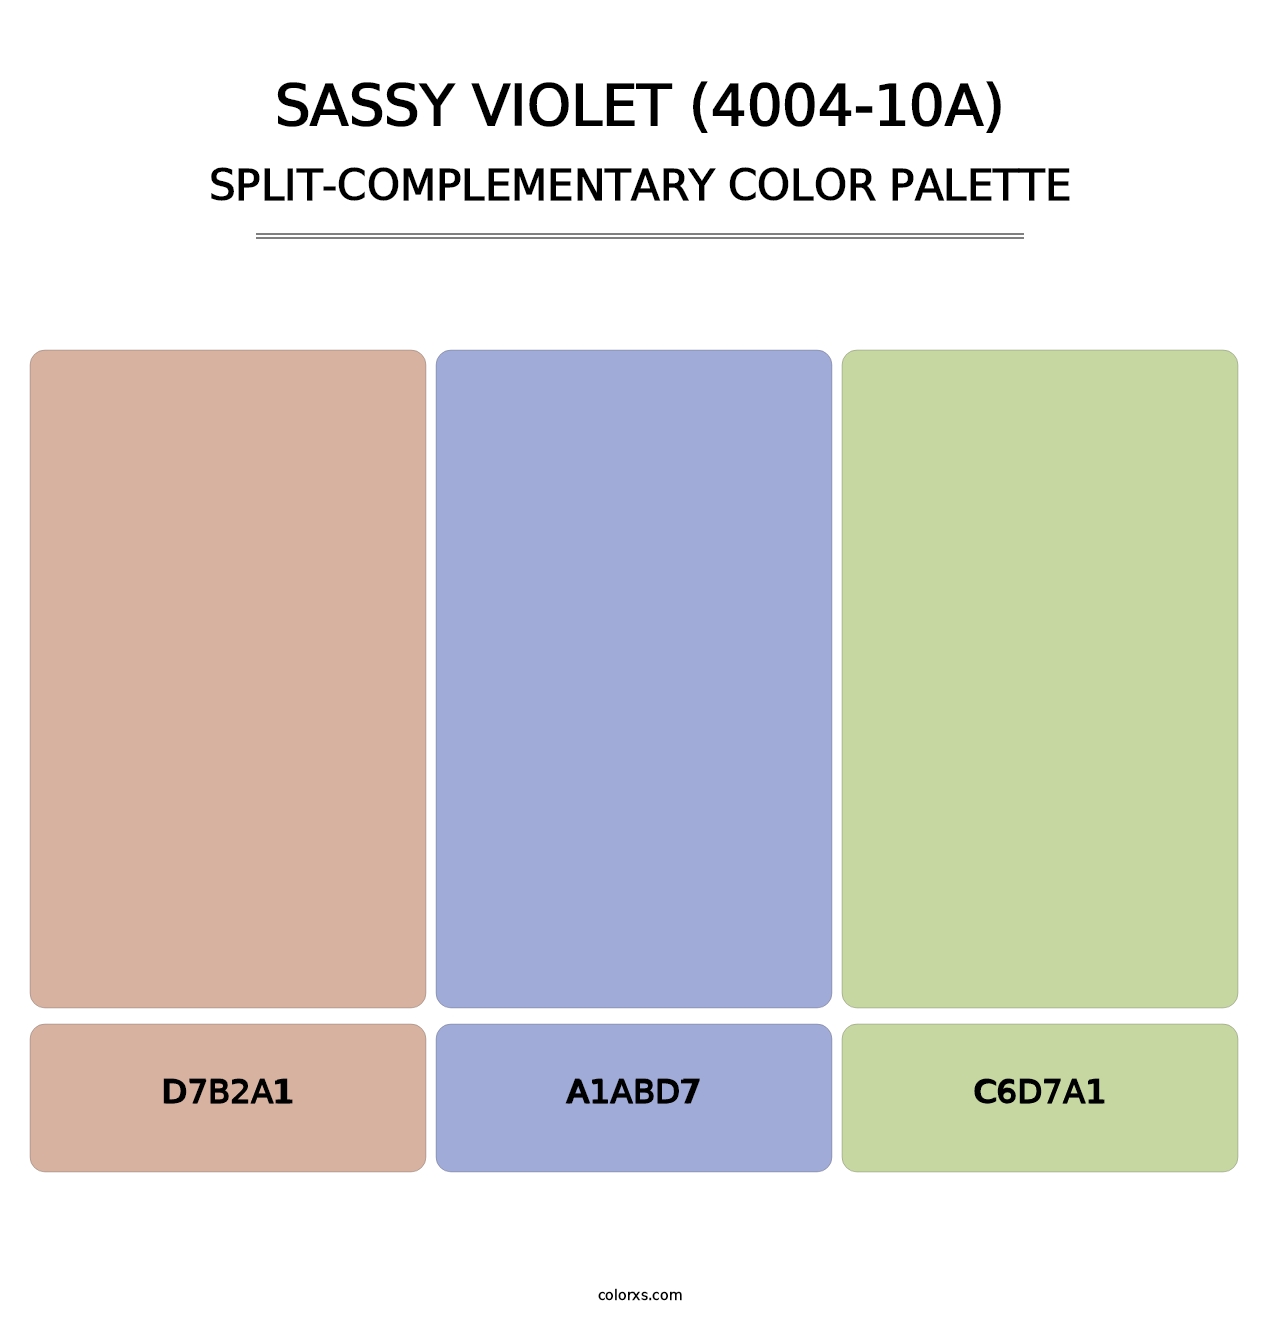 Sassy Violet (4004-10A) - Split-Complementary Color Palette